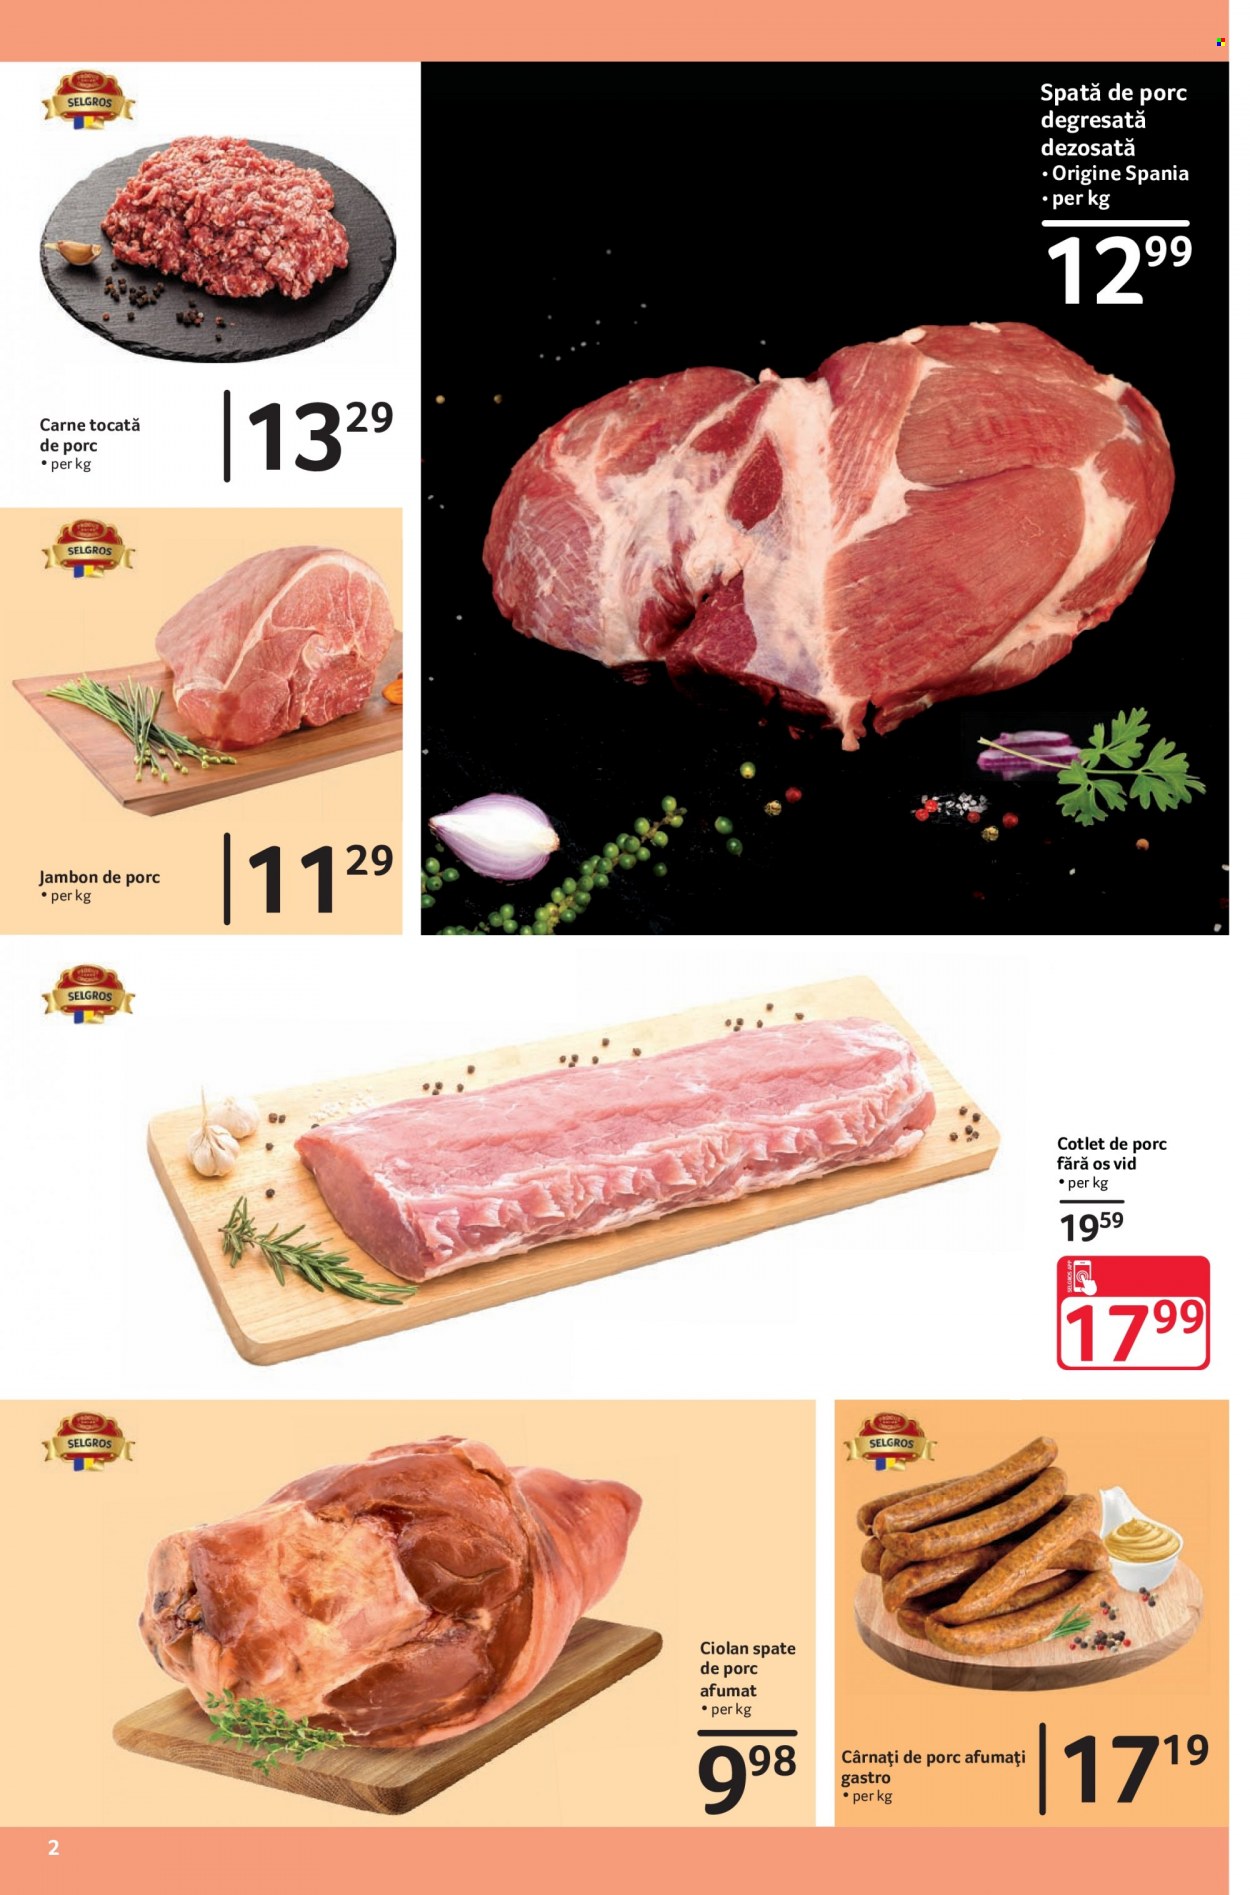 thumbnail - Cataloage Selgros - 01.12.2021 - 31.12.2021 - Produse în vânzare - cârnați de porc, carne tocată de porc, carne tocată, cotlet de porc, spată de porc, cârnaţi. Pagina 2.